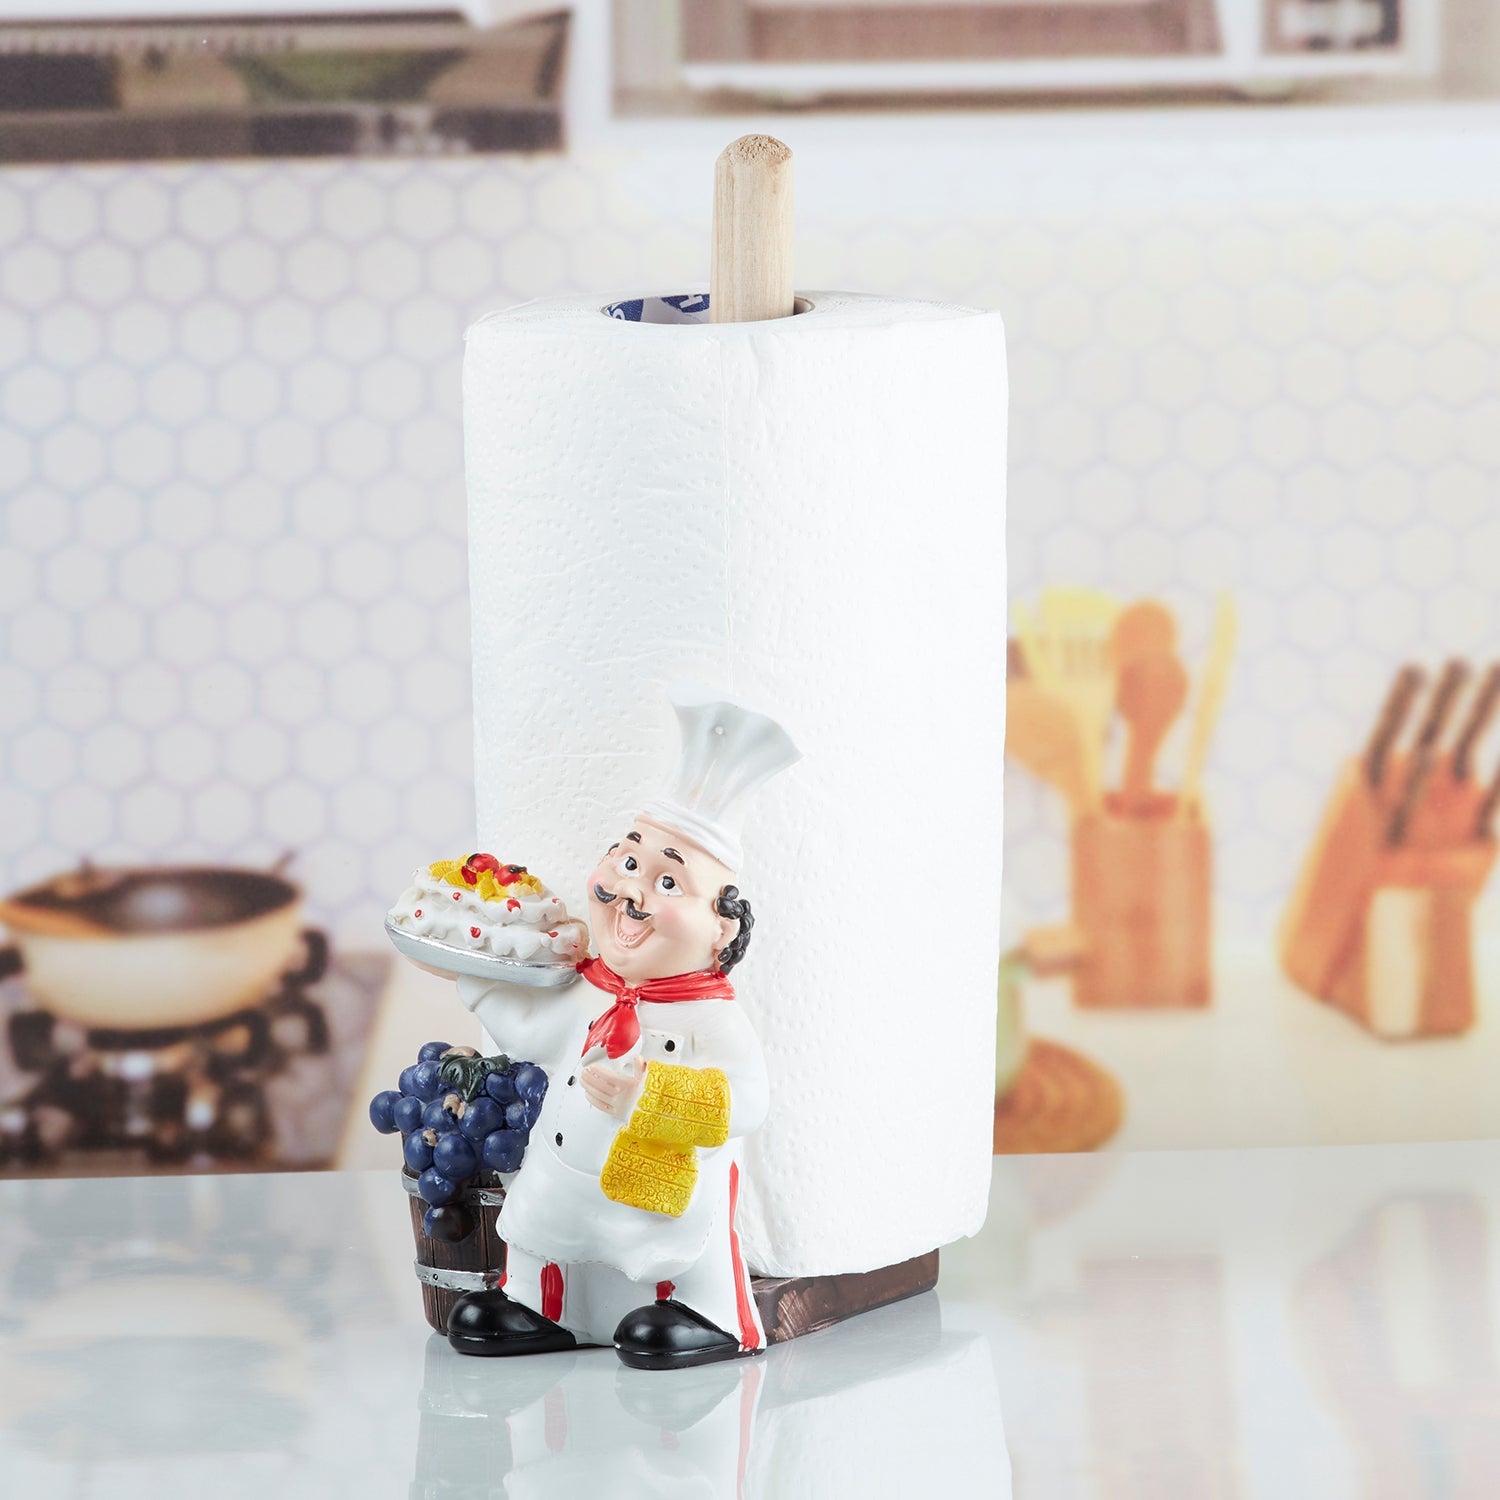 Polyresin Chef Tissue Roll holder, Tissue paper dispenser (10355)